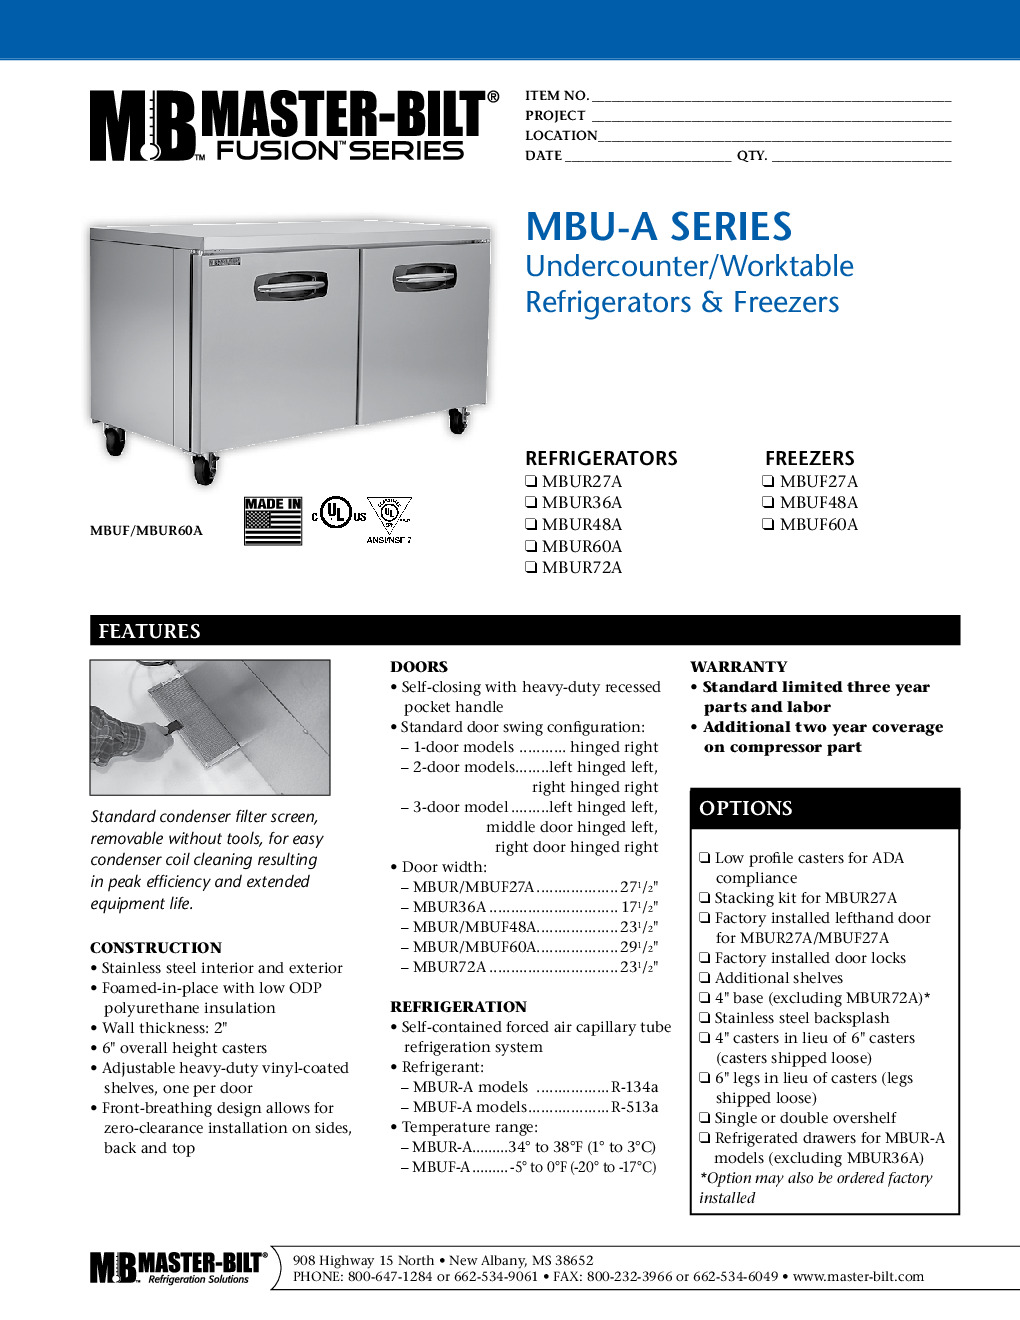 Master-Bilt MBUR36 Reach-In Undercounter Refrigerator